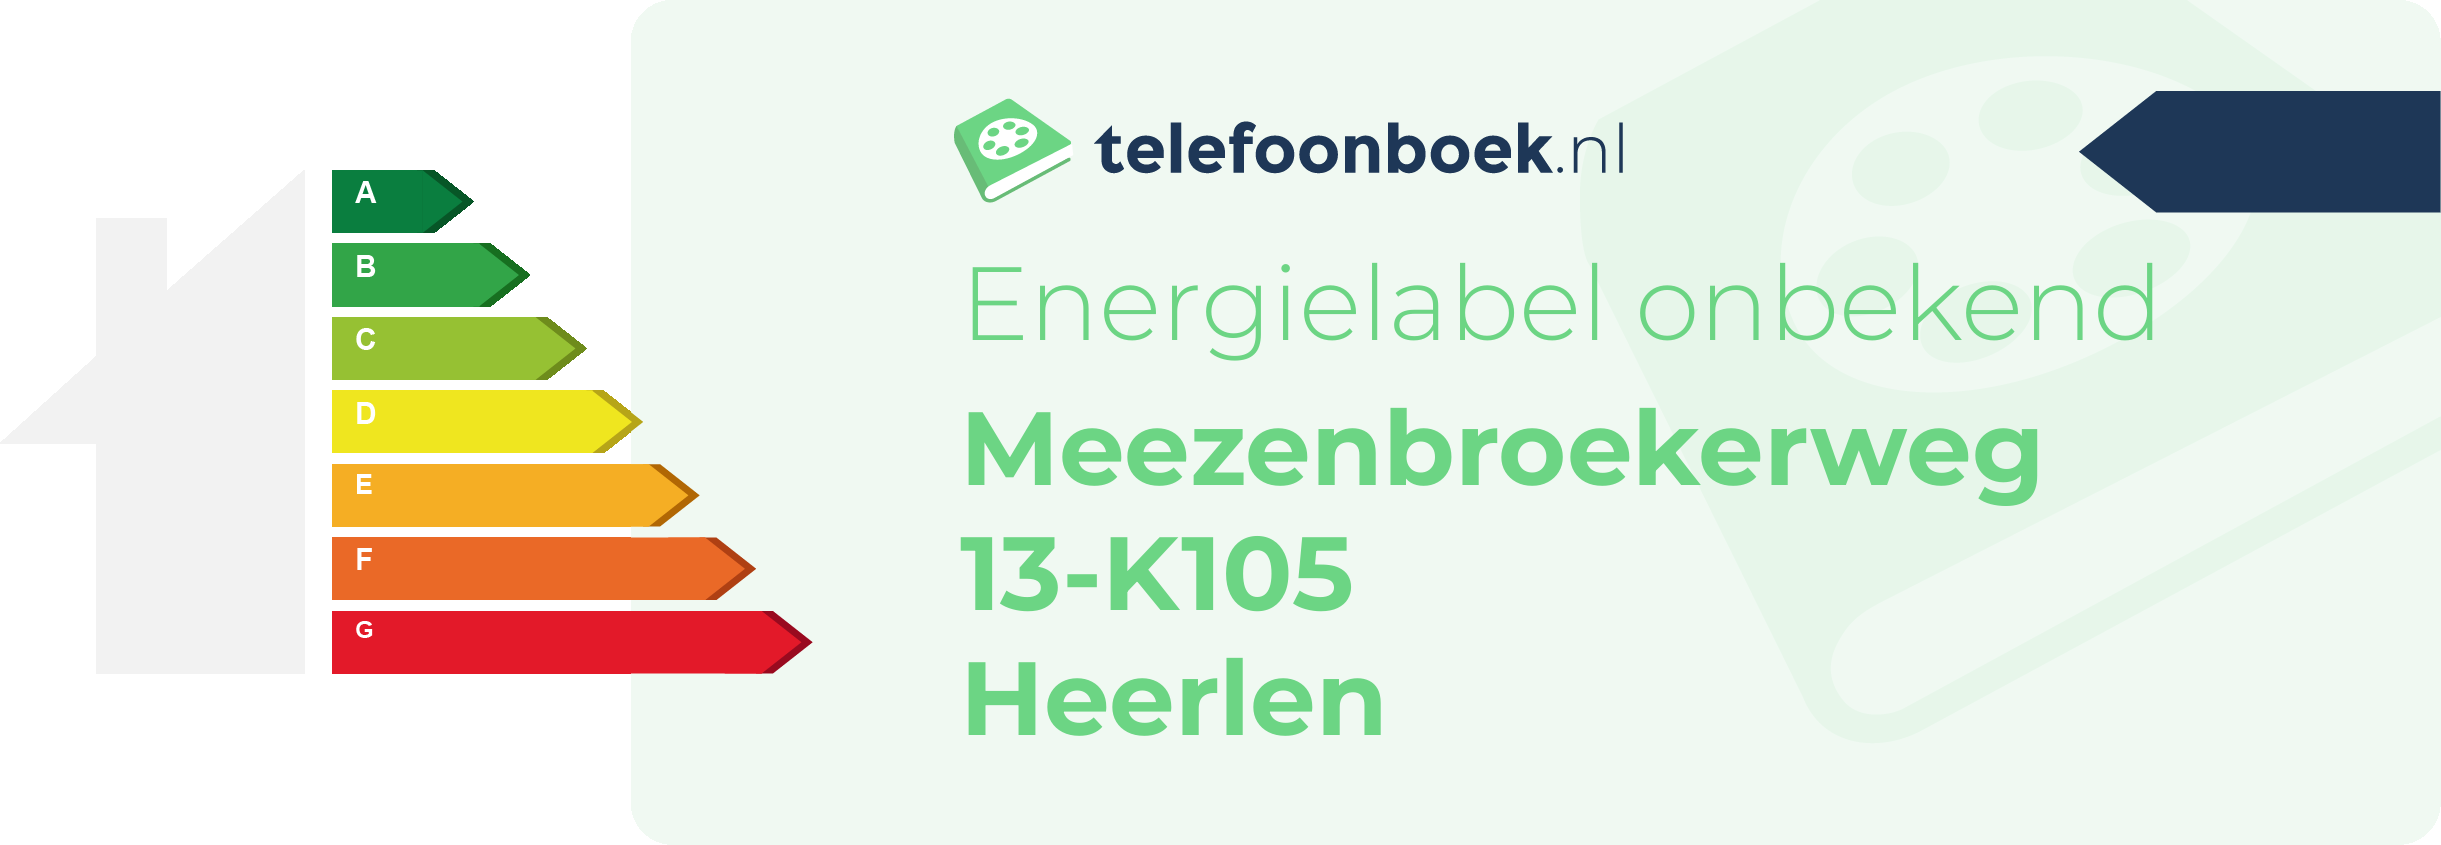 Energielabel Meezenbroekerweg 13-K105 Heerlen